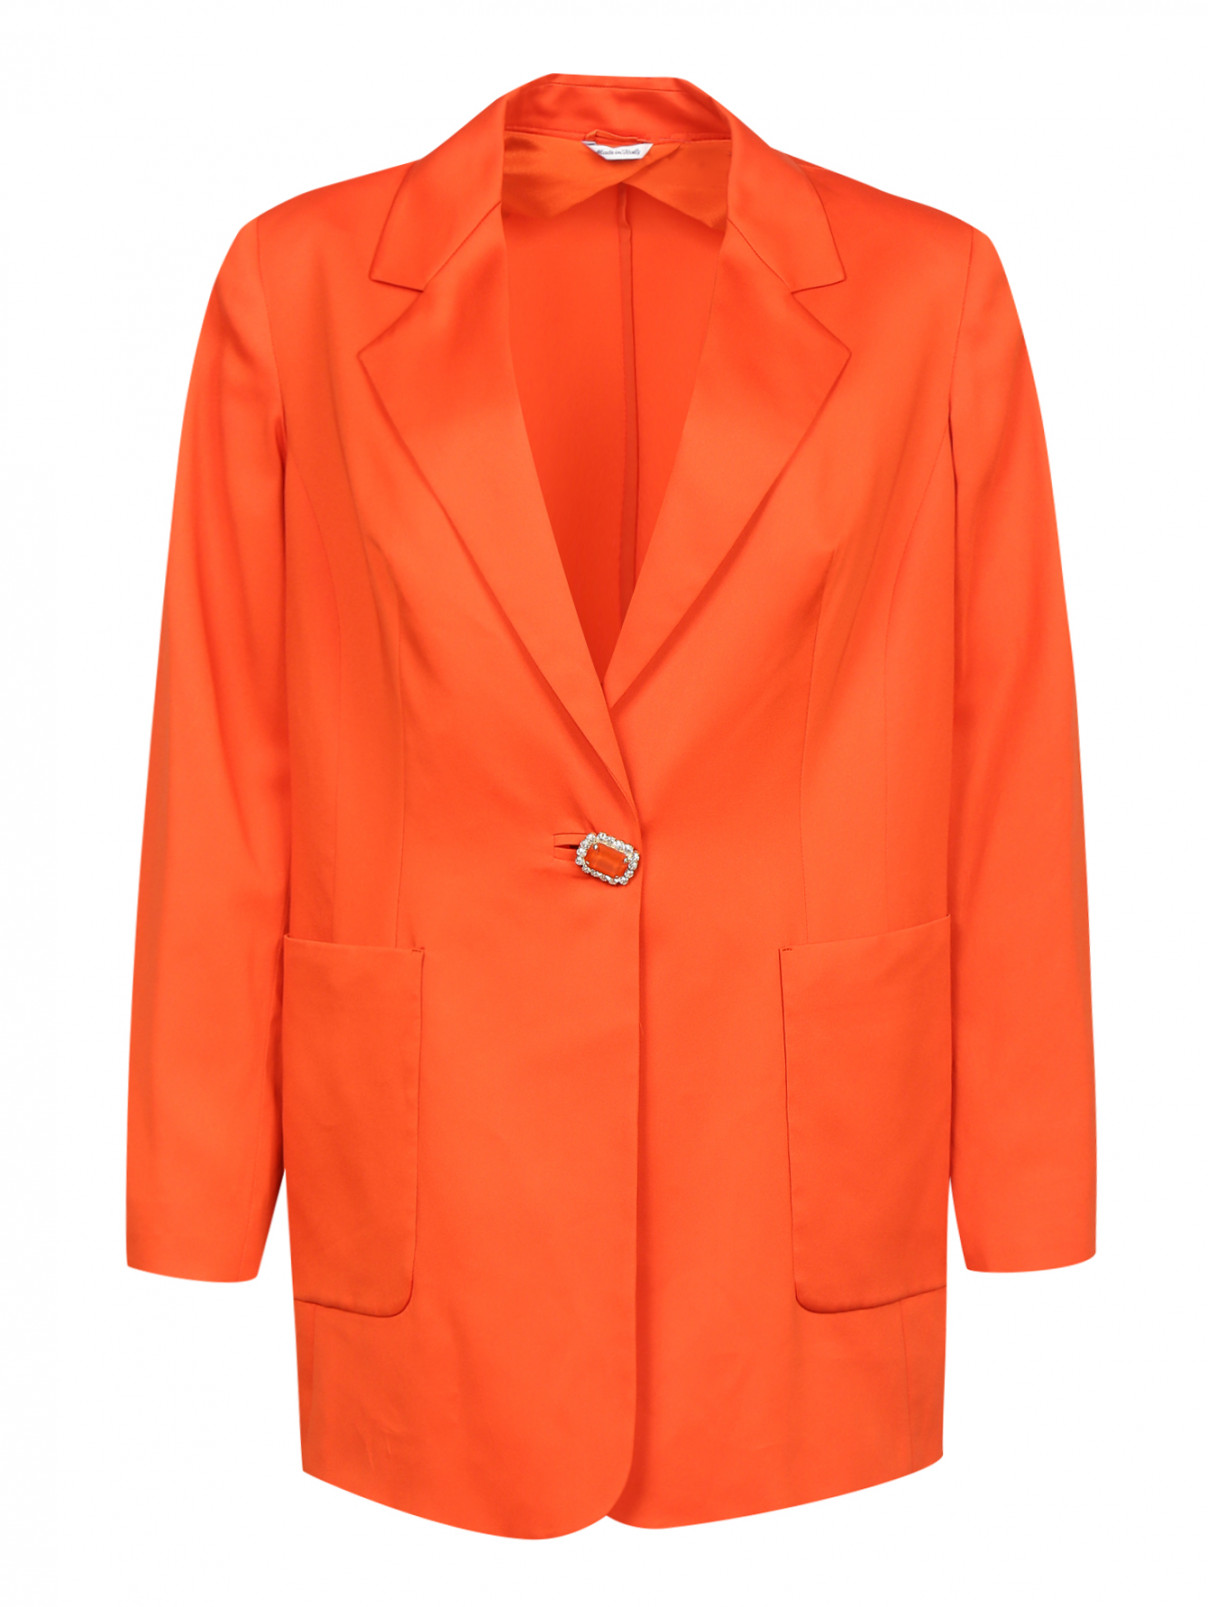 Однобортный жакет с декорированной пуговицей Marina Rinaldi  –  Общий вид  – Цвет:  Оранжевый